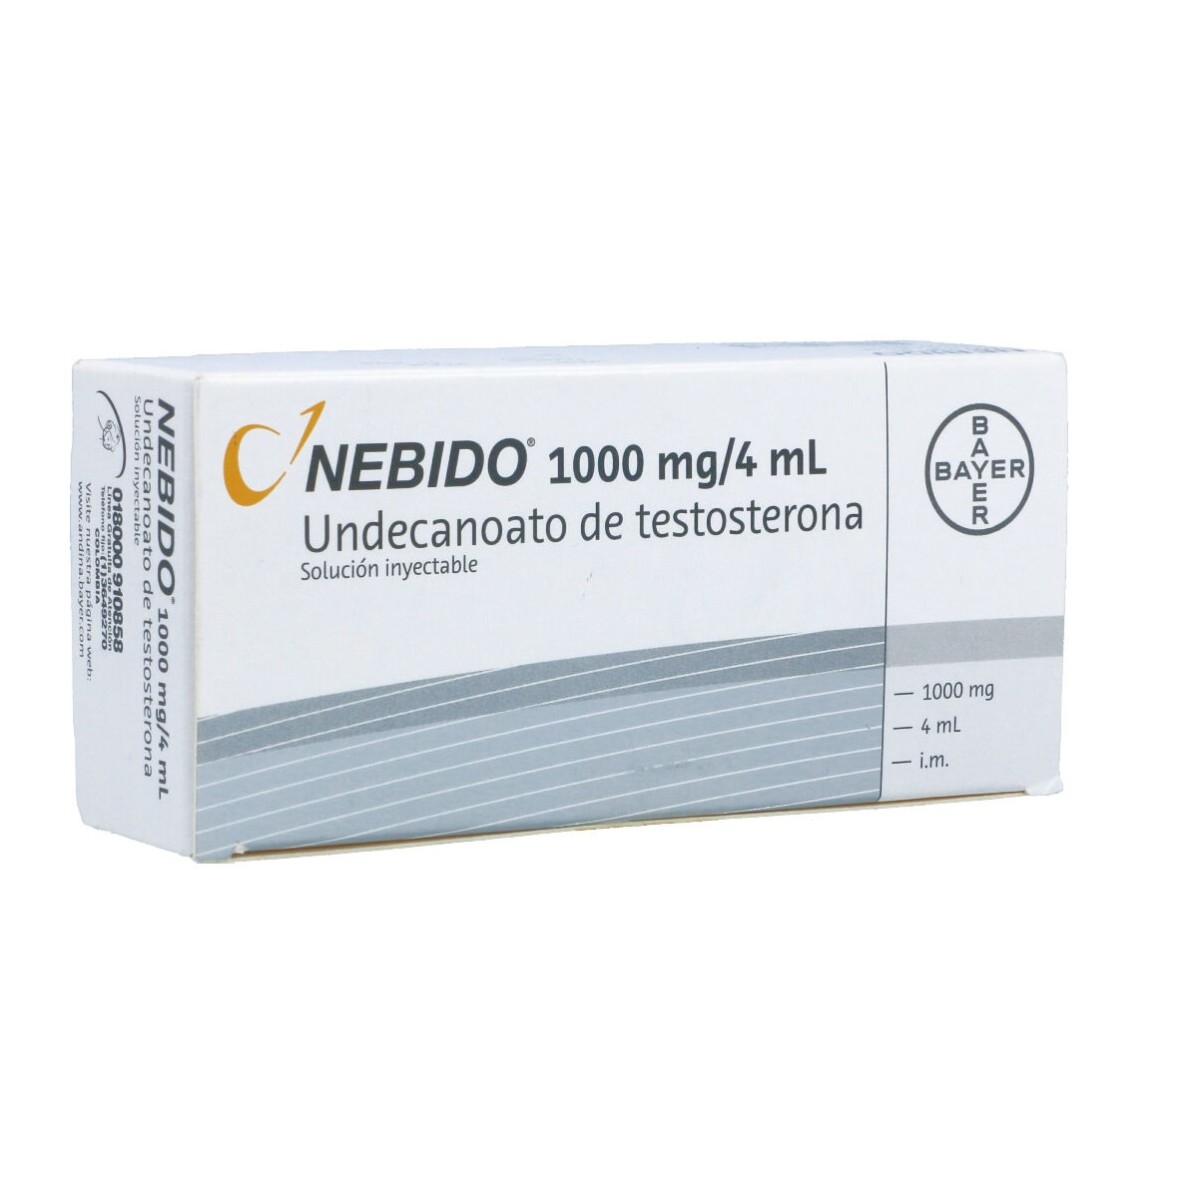 Nebido 1000 Mg. 4 Ml. 1 Ampolla 